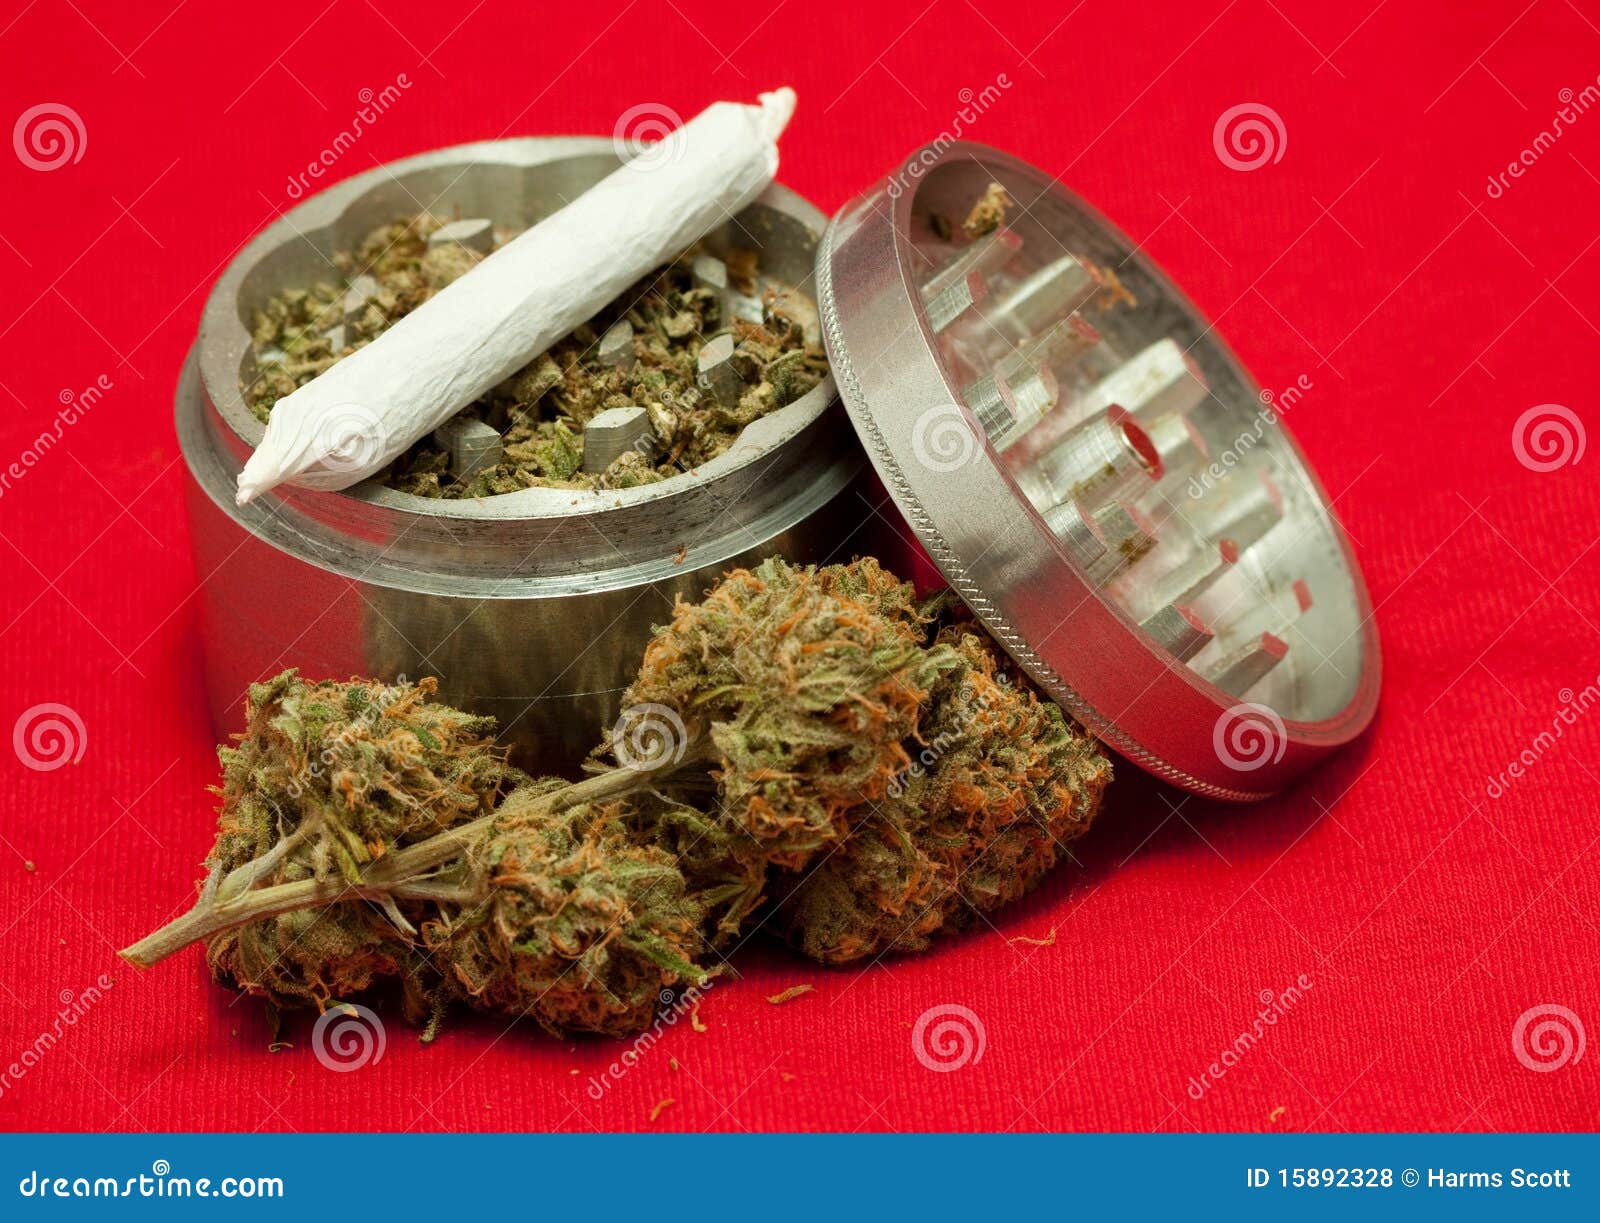 健康, 大麻, 天然藥物 的免費圖庫相片